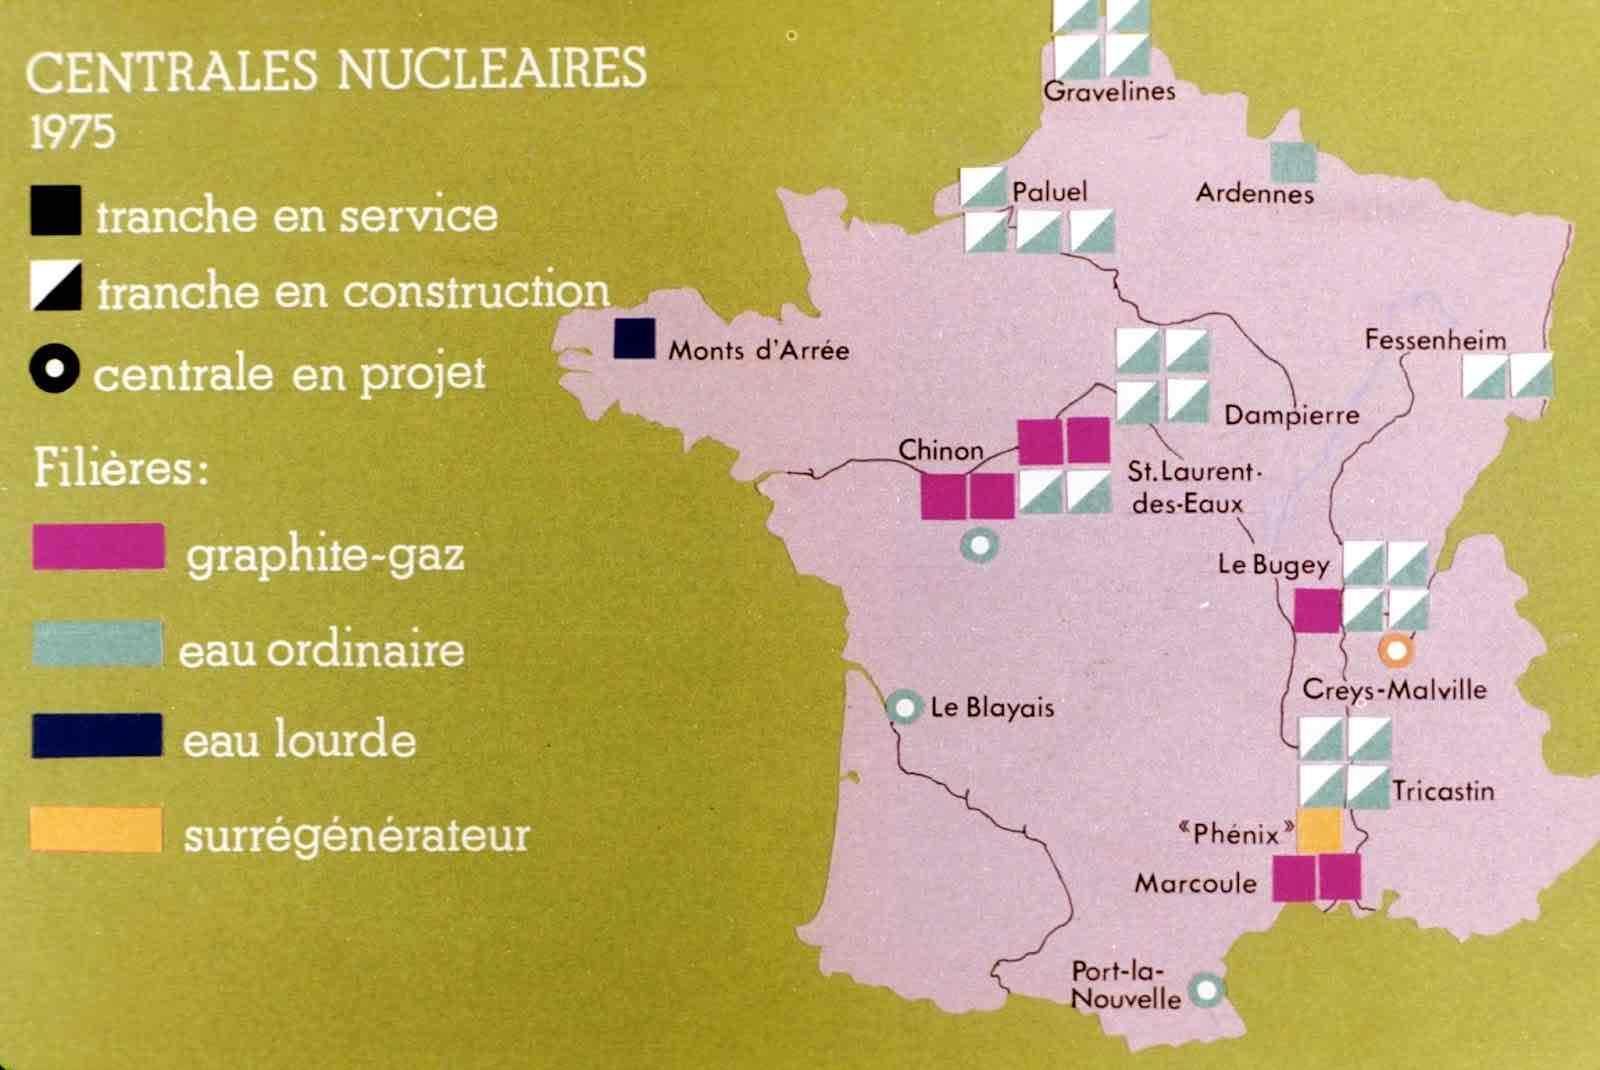 programme nucléaire français 1975